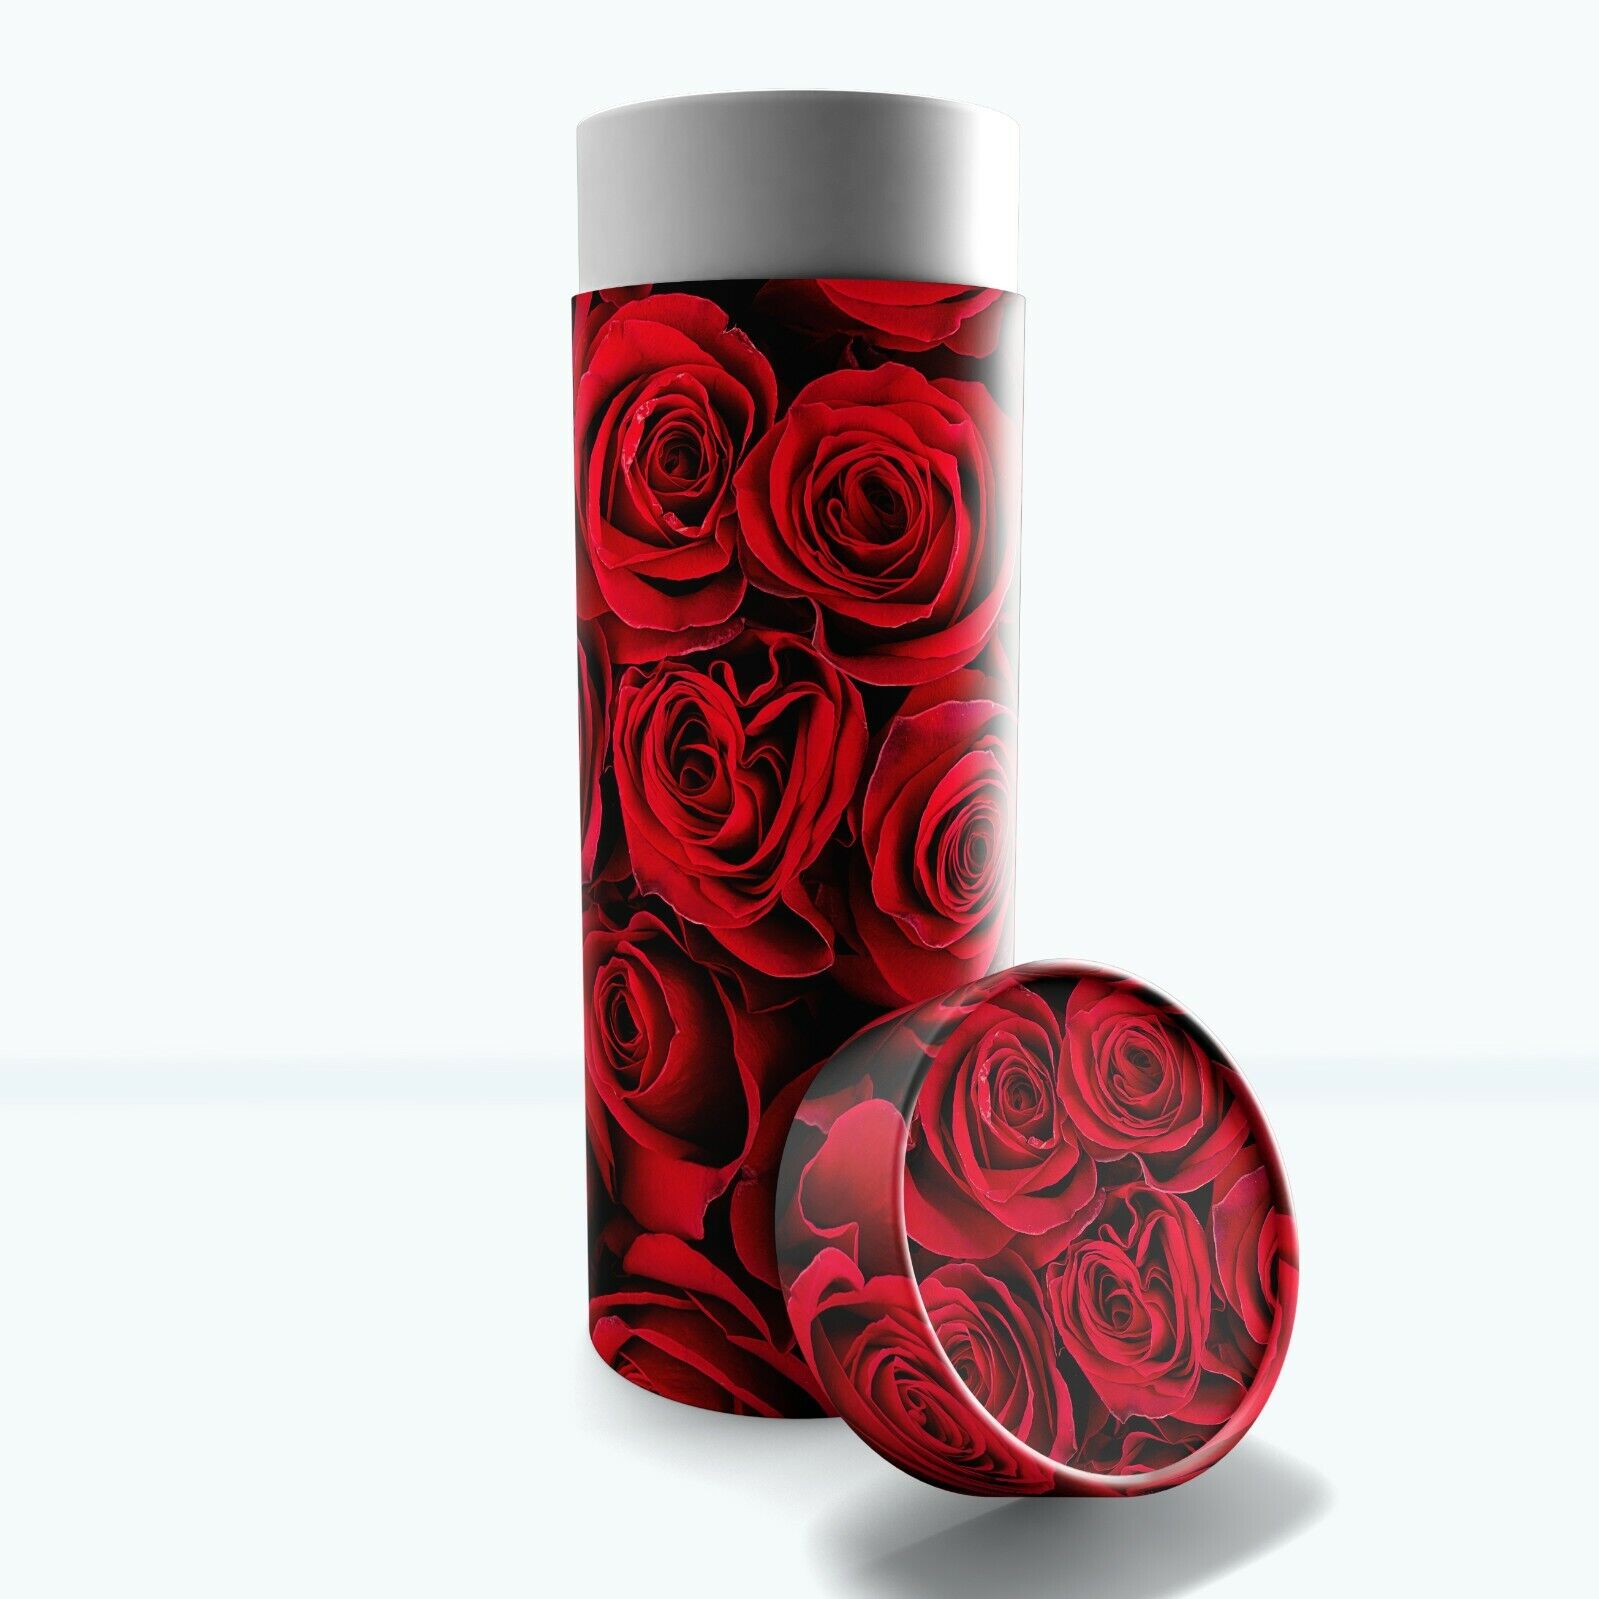 Crimson Rose Cremation Urn, Biodegradable Urn, Scattering Tubes, Burial Urn